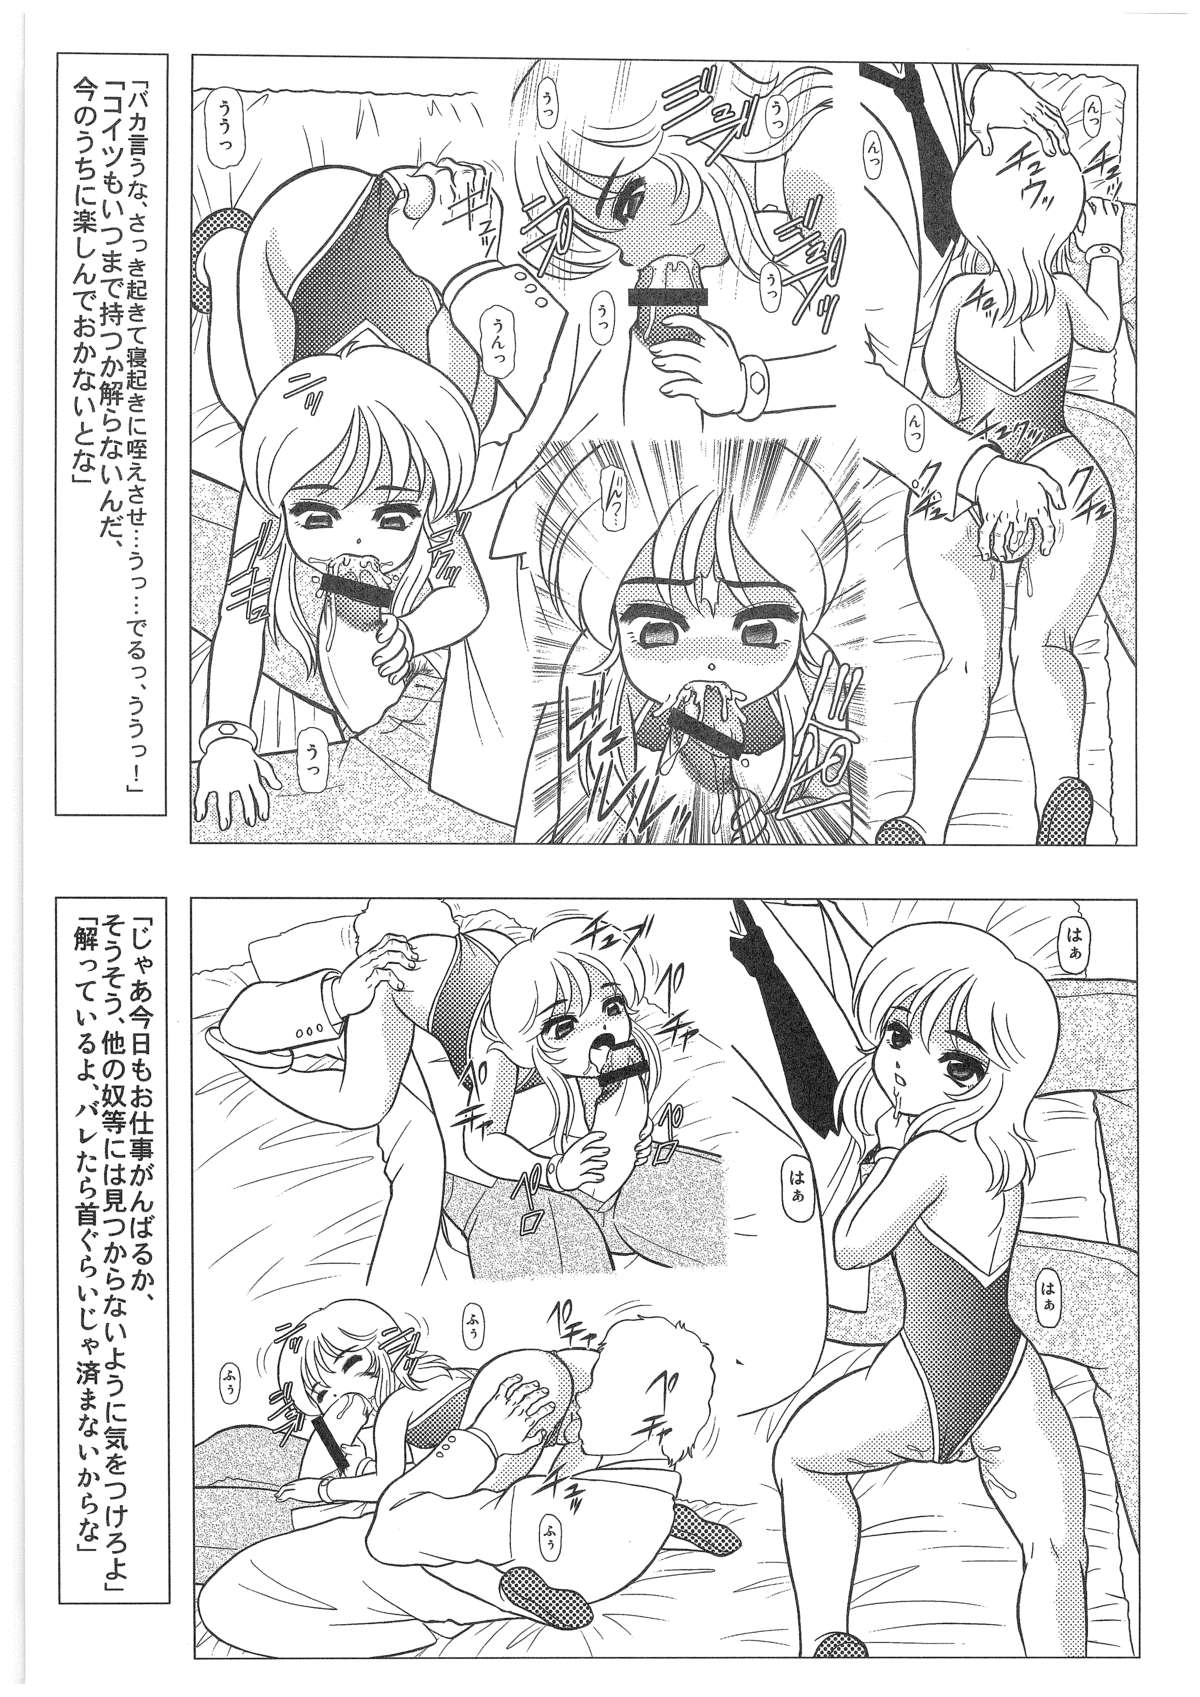 [Dakimakuma, Jingai Makyou Club (WING☆BIRD)] CHARA EMU W☆B010 GONDAM 008 ZZ-W-F91 (Various) page 12 full